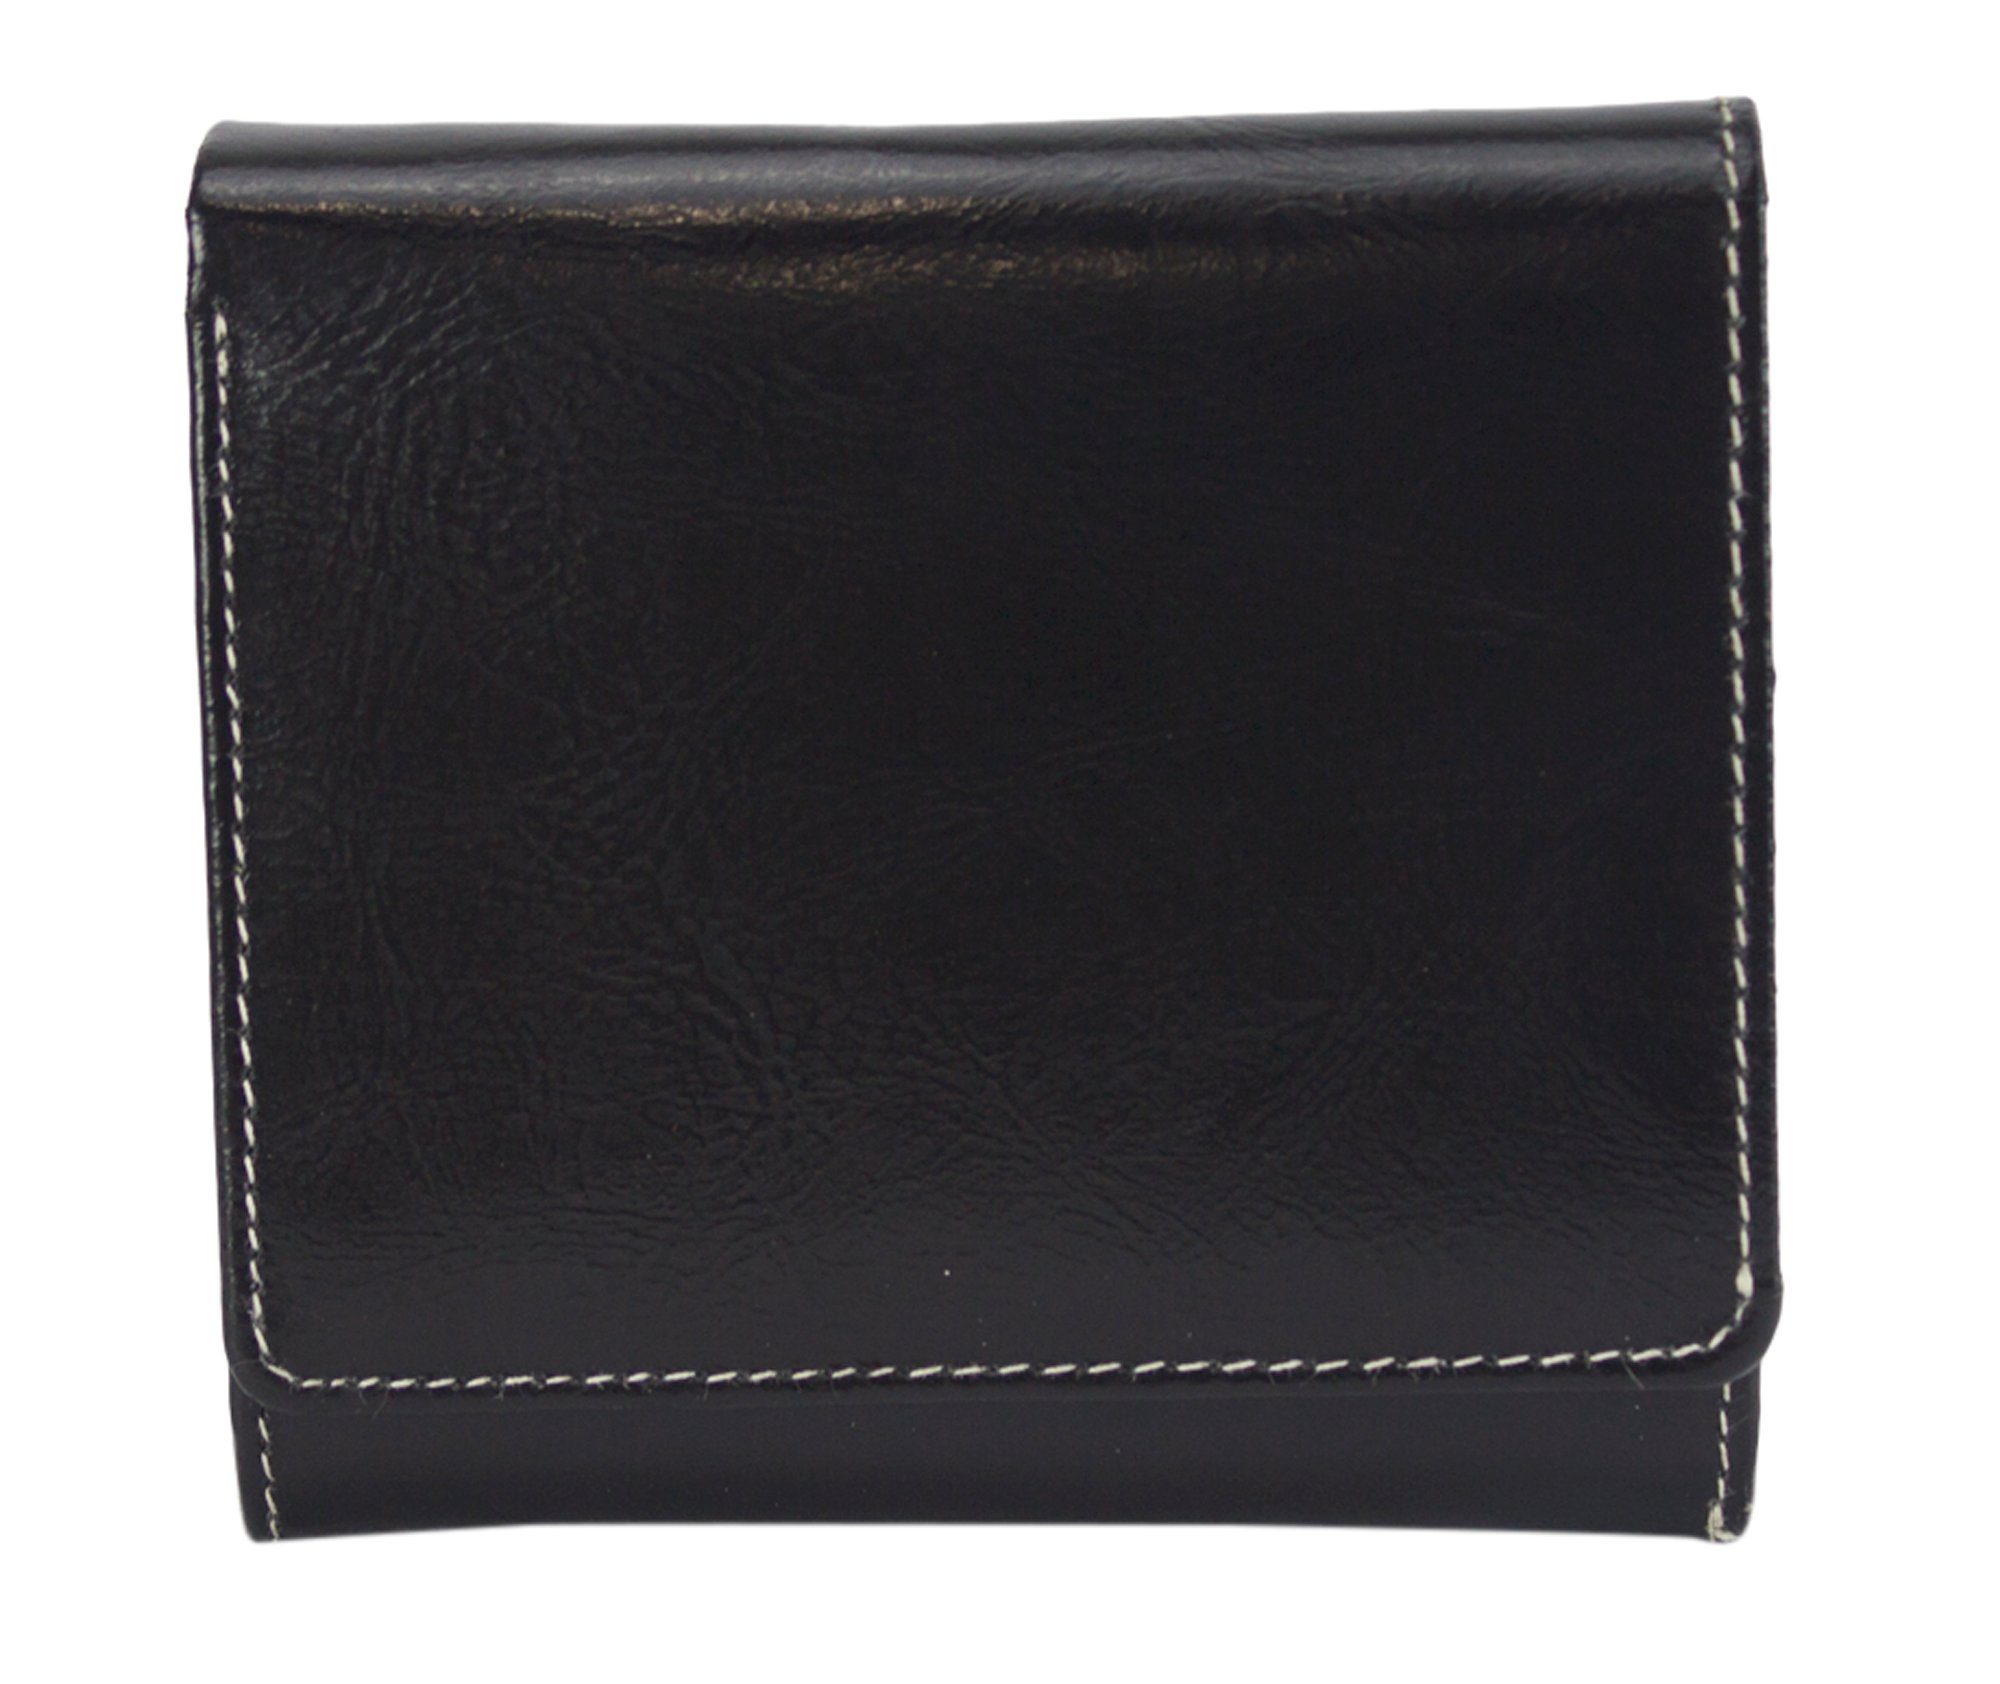 Sunsa Geldbörse echt Leder Geldbeutel Portemonnaie Brieftasche klein Damen, echt Leder, aus recycelten Lederresten, mit RFID-Schutz, Unisex schwarz